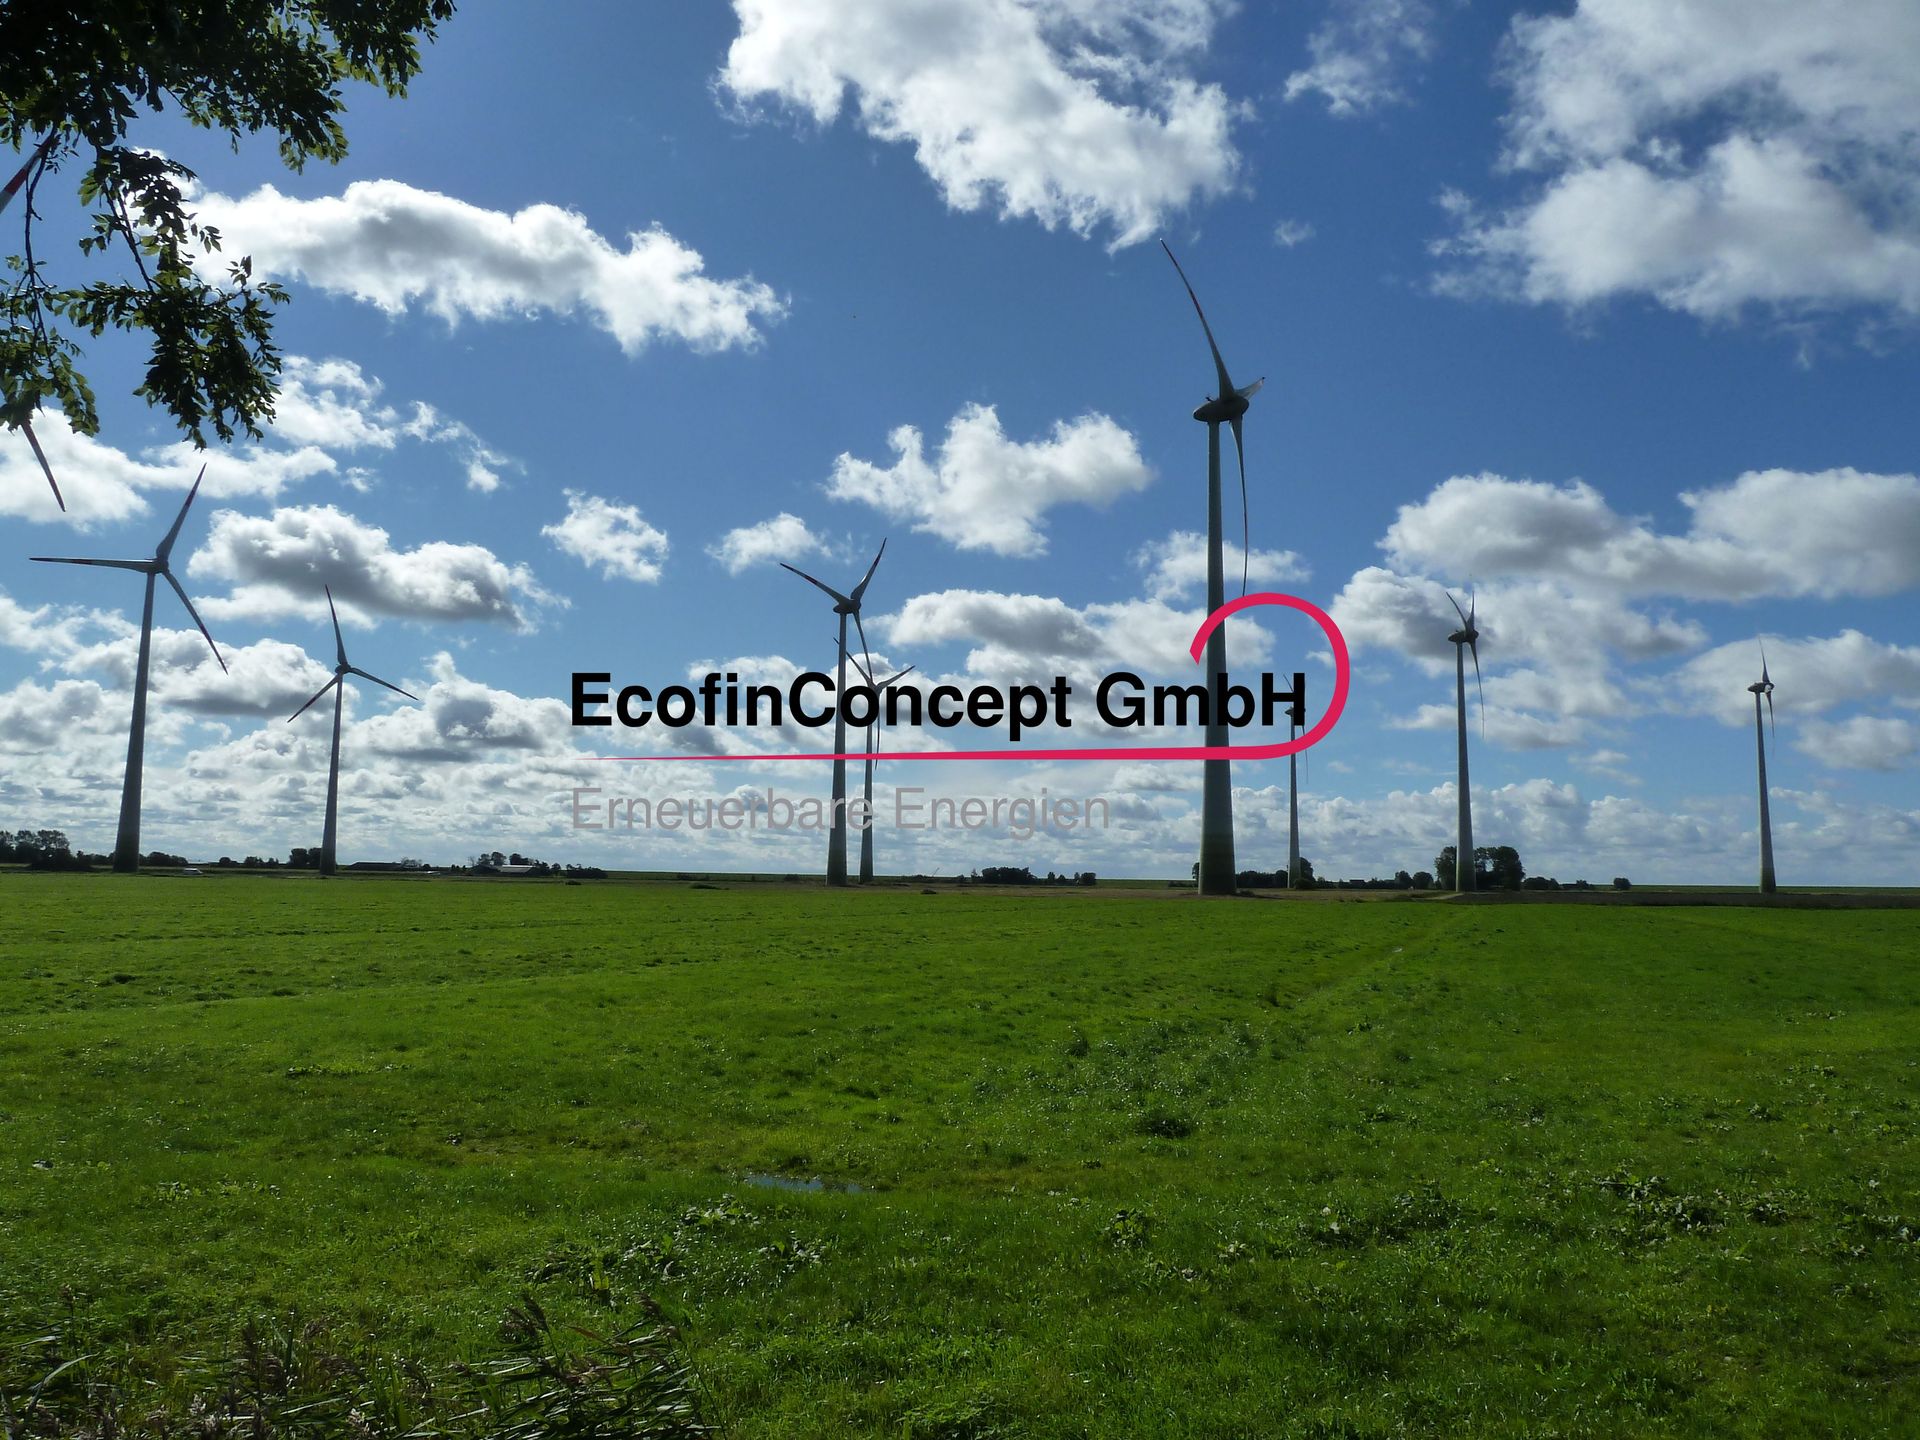 EcofinConcept GmbH